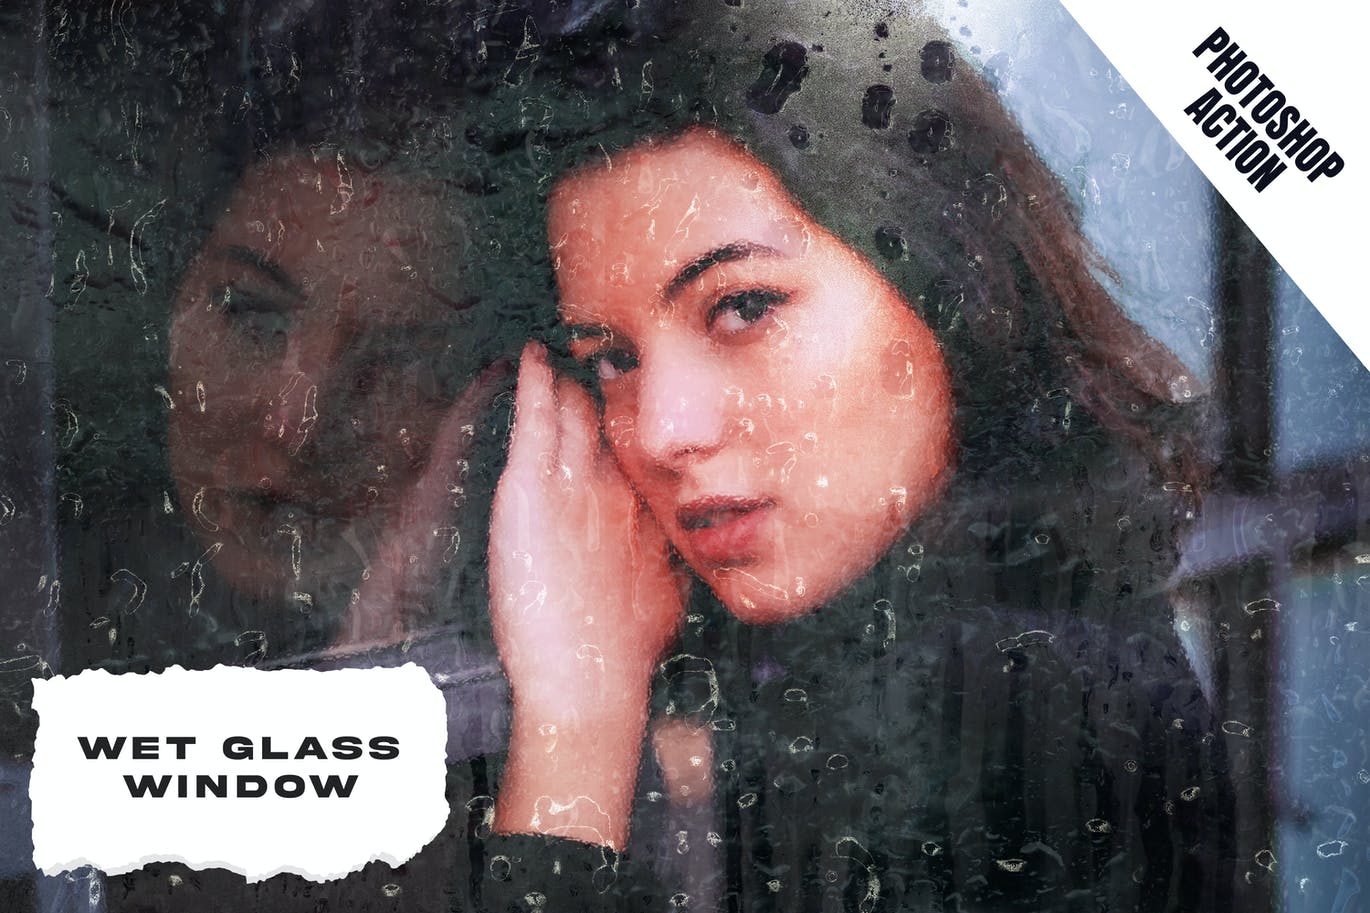 雨水玻璃窗效果照片处理PS动作 Wet Glass Window Photoshop Action 插件预设 第1张